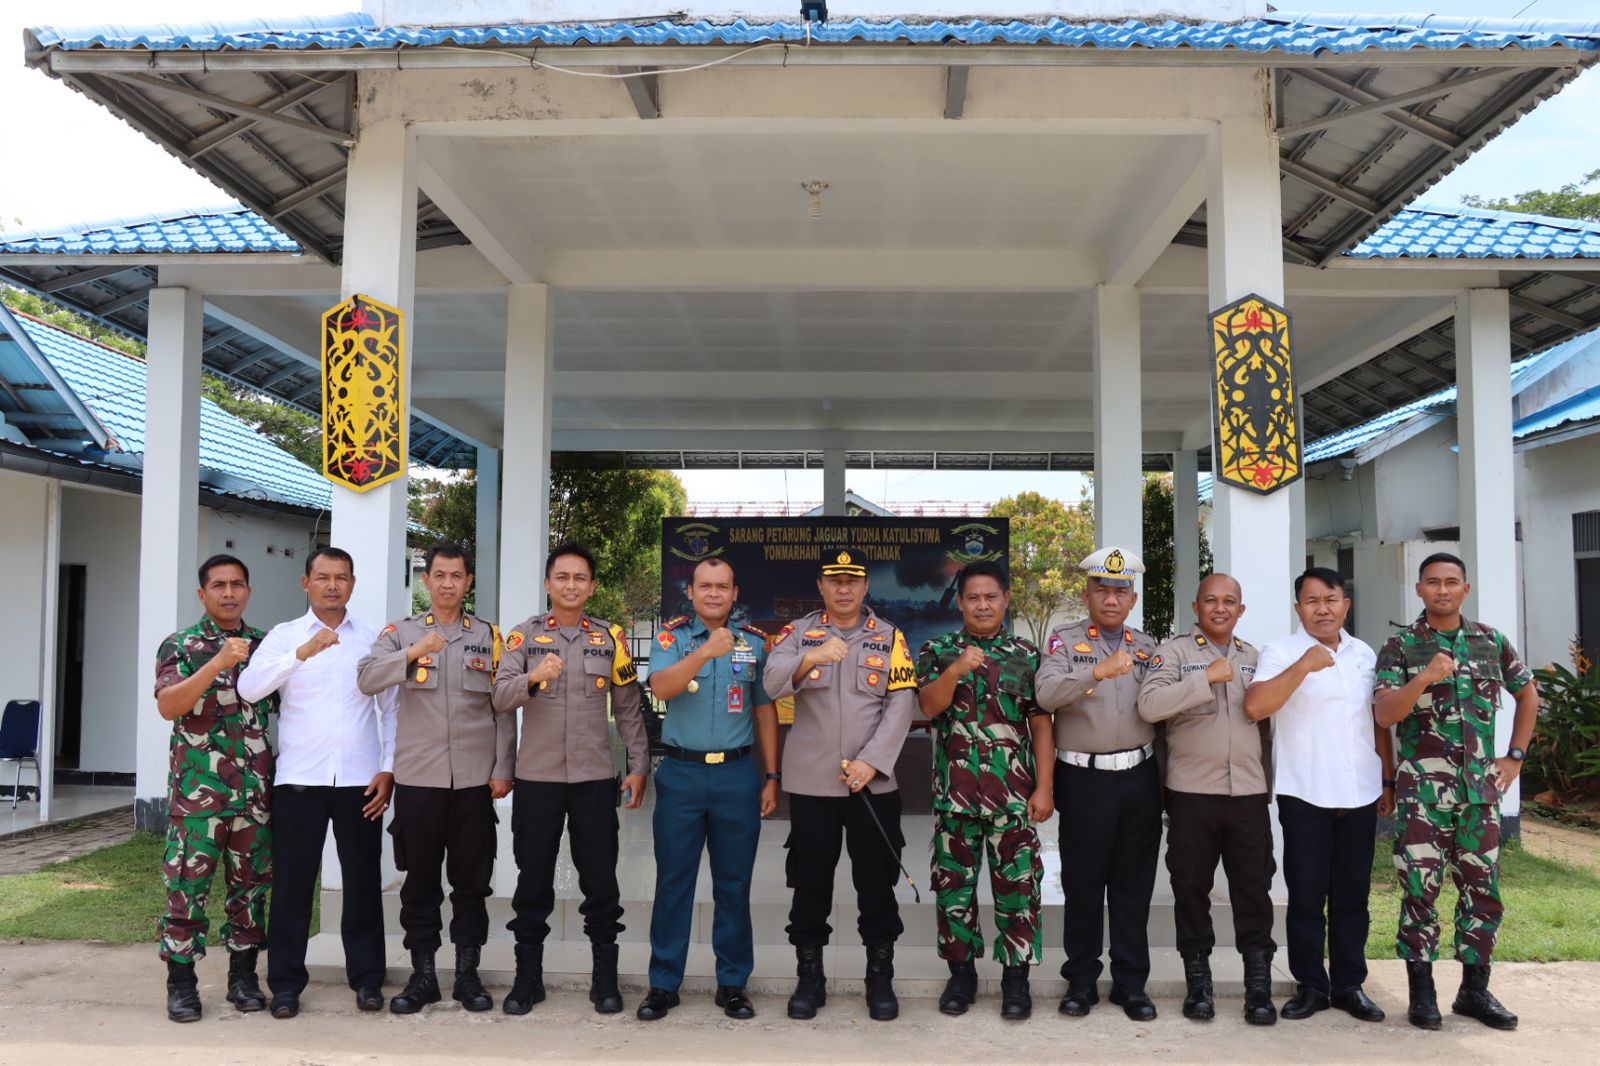 Kapolres Mempawah, AKBP Sudarsono bersama rombongan foto bersama Danyonmarhanlan XII, Letkol Marinir Tri Anto dan jajaran. (Foto: Polres Mempawah)